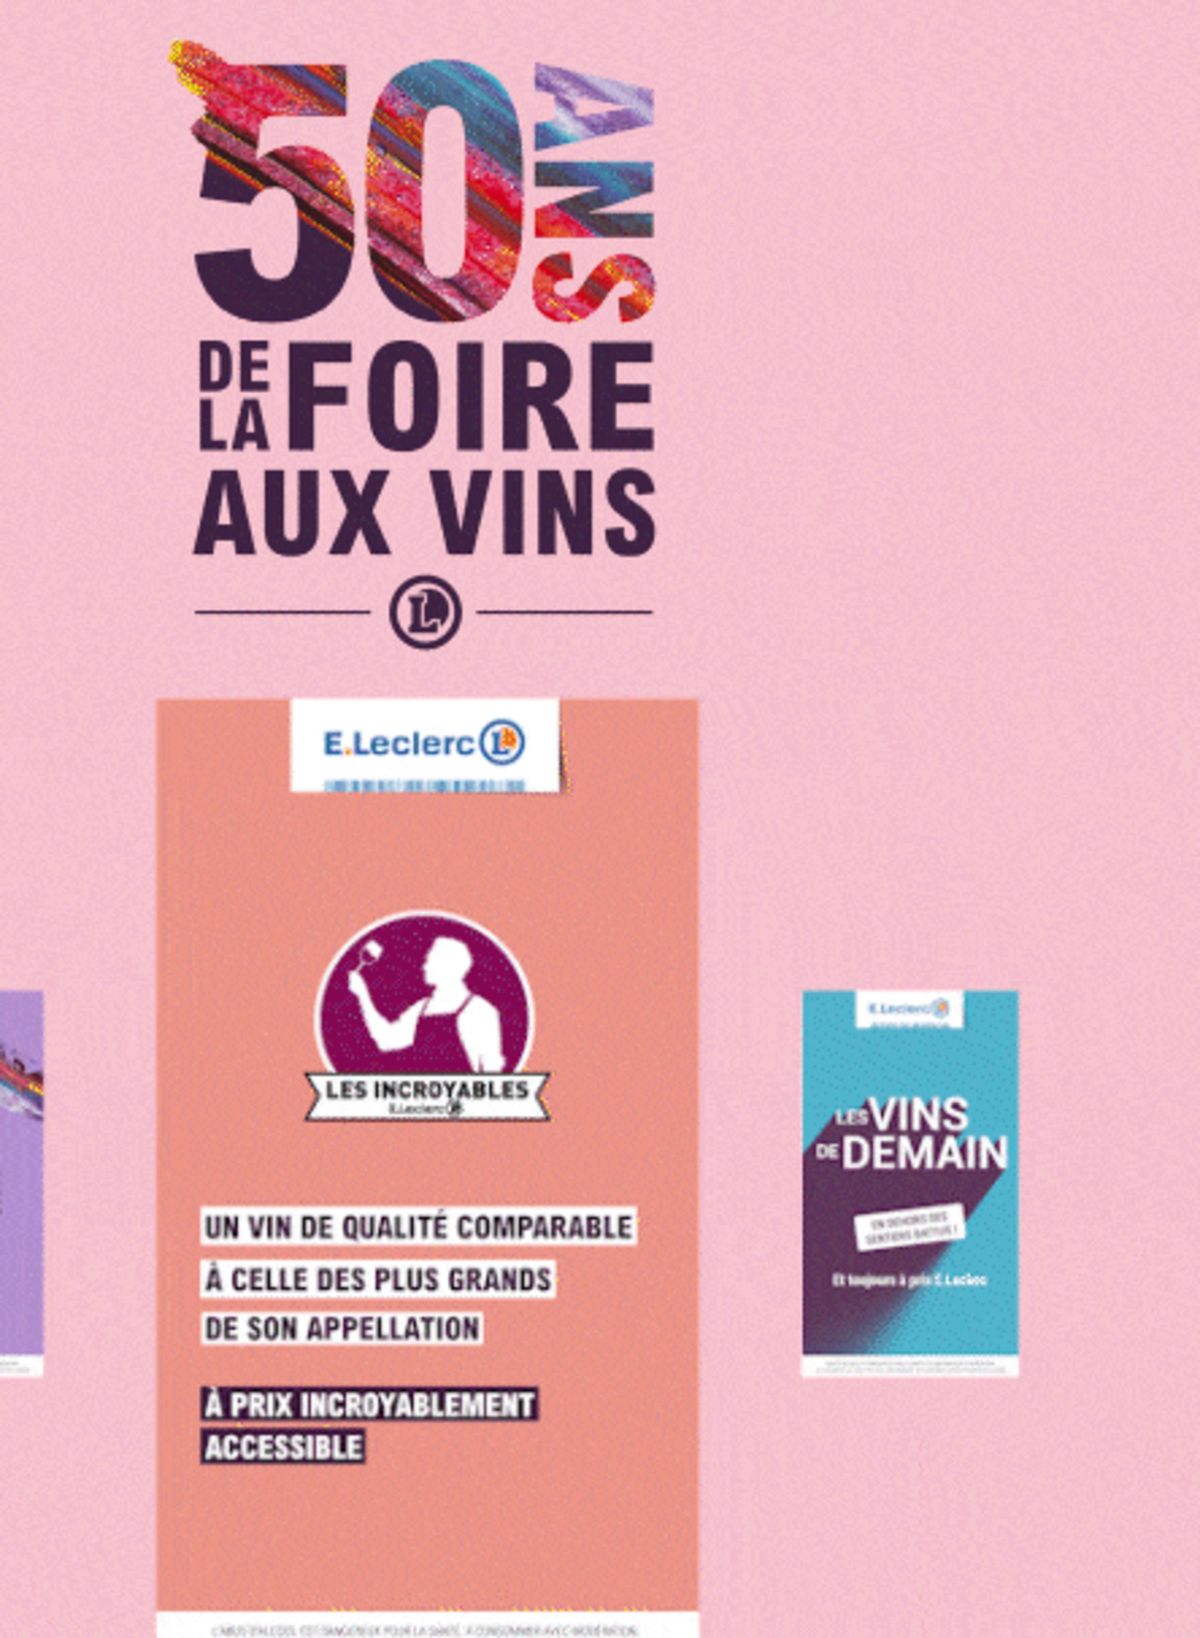 Catalogue Foire Aux Vins - Mixte, page 00673